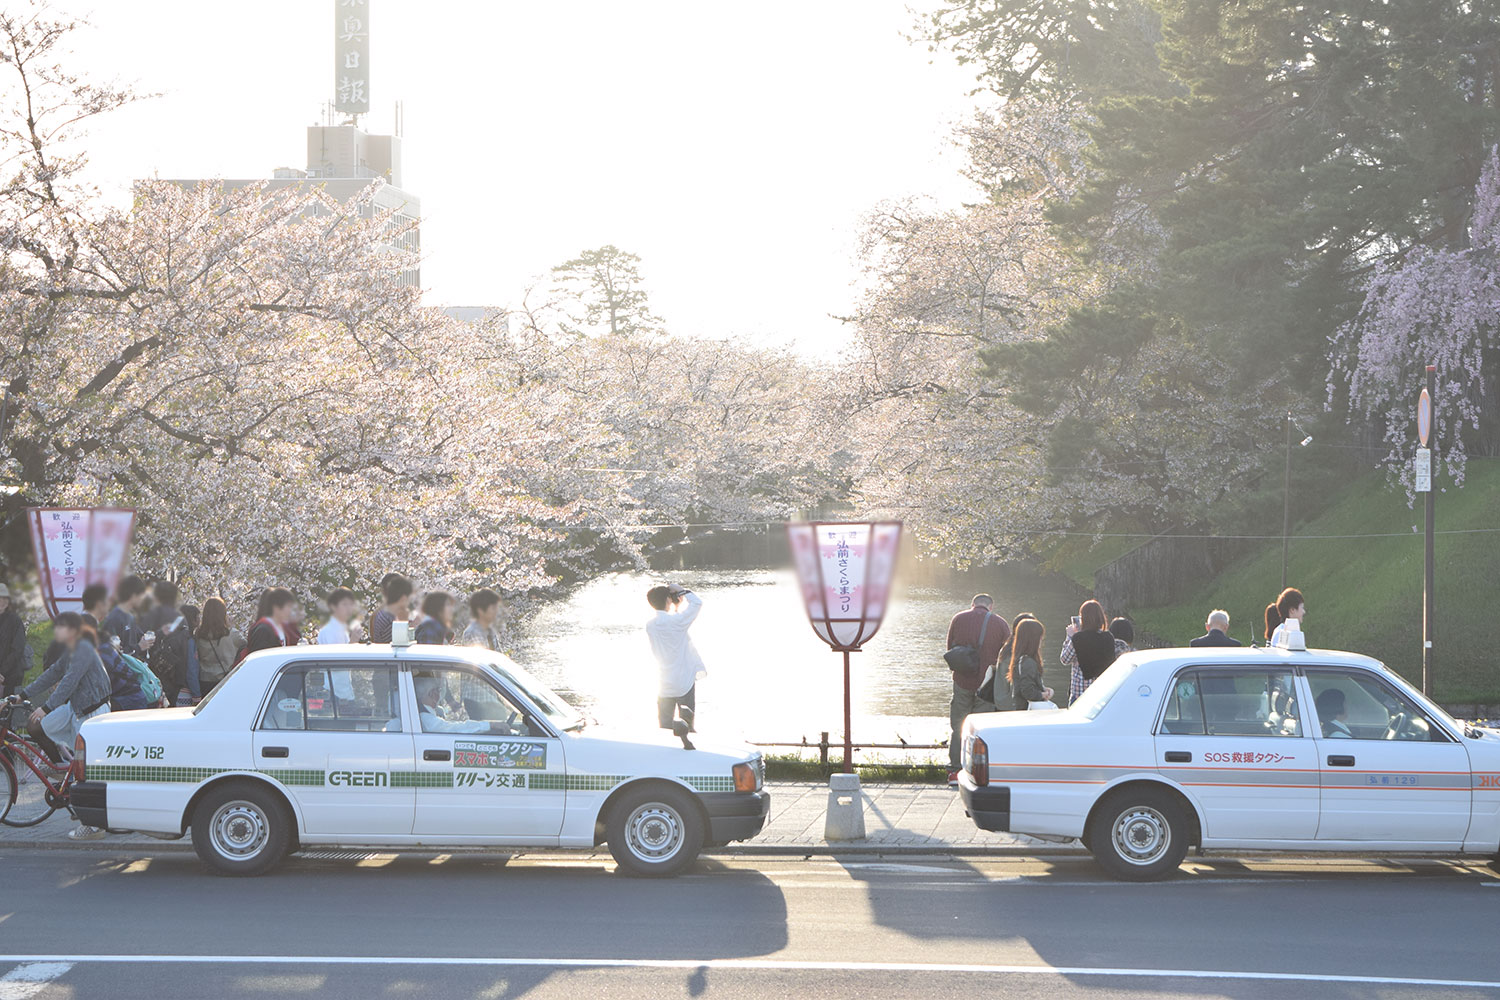 弘前公園のタクシー乗り場について